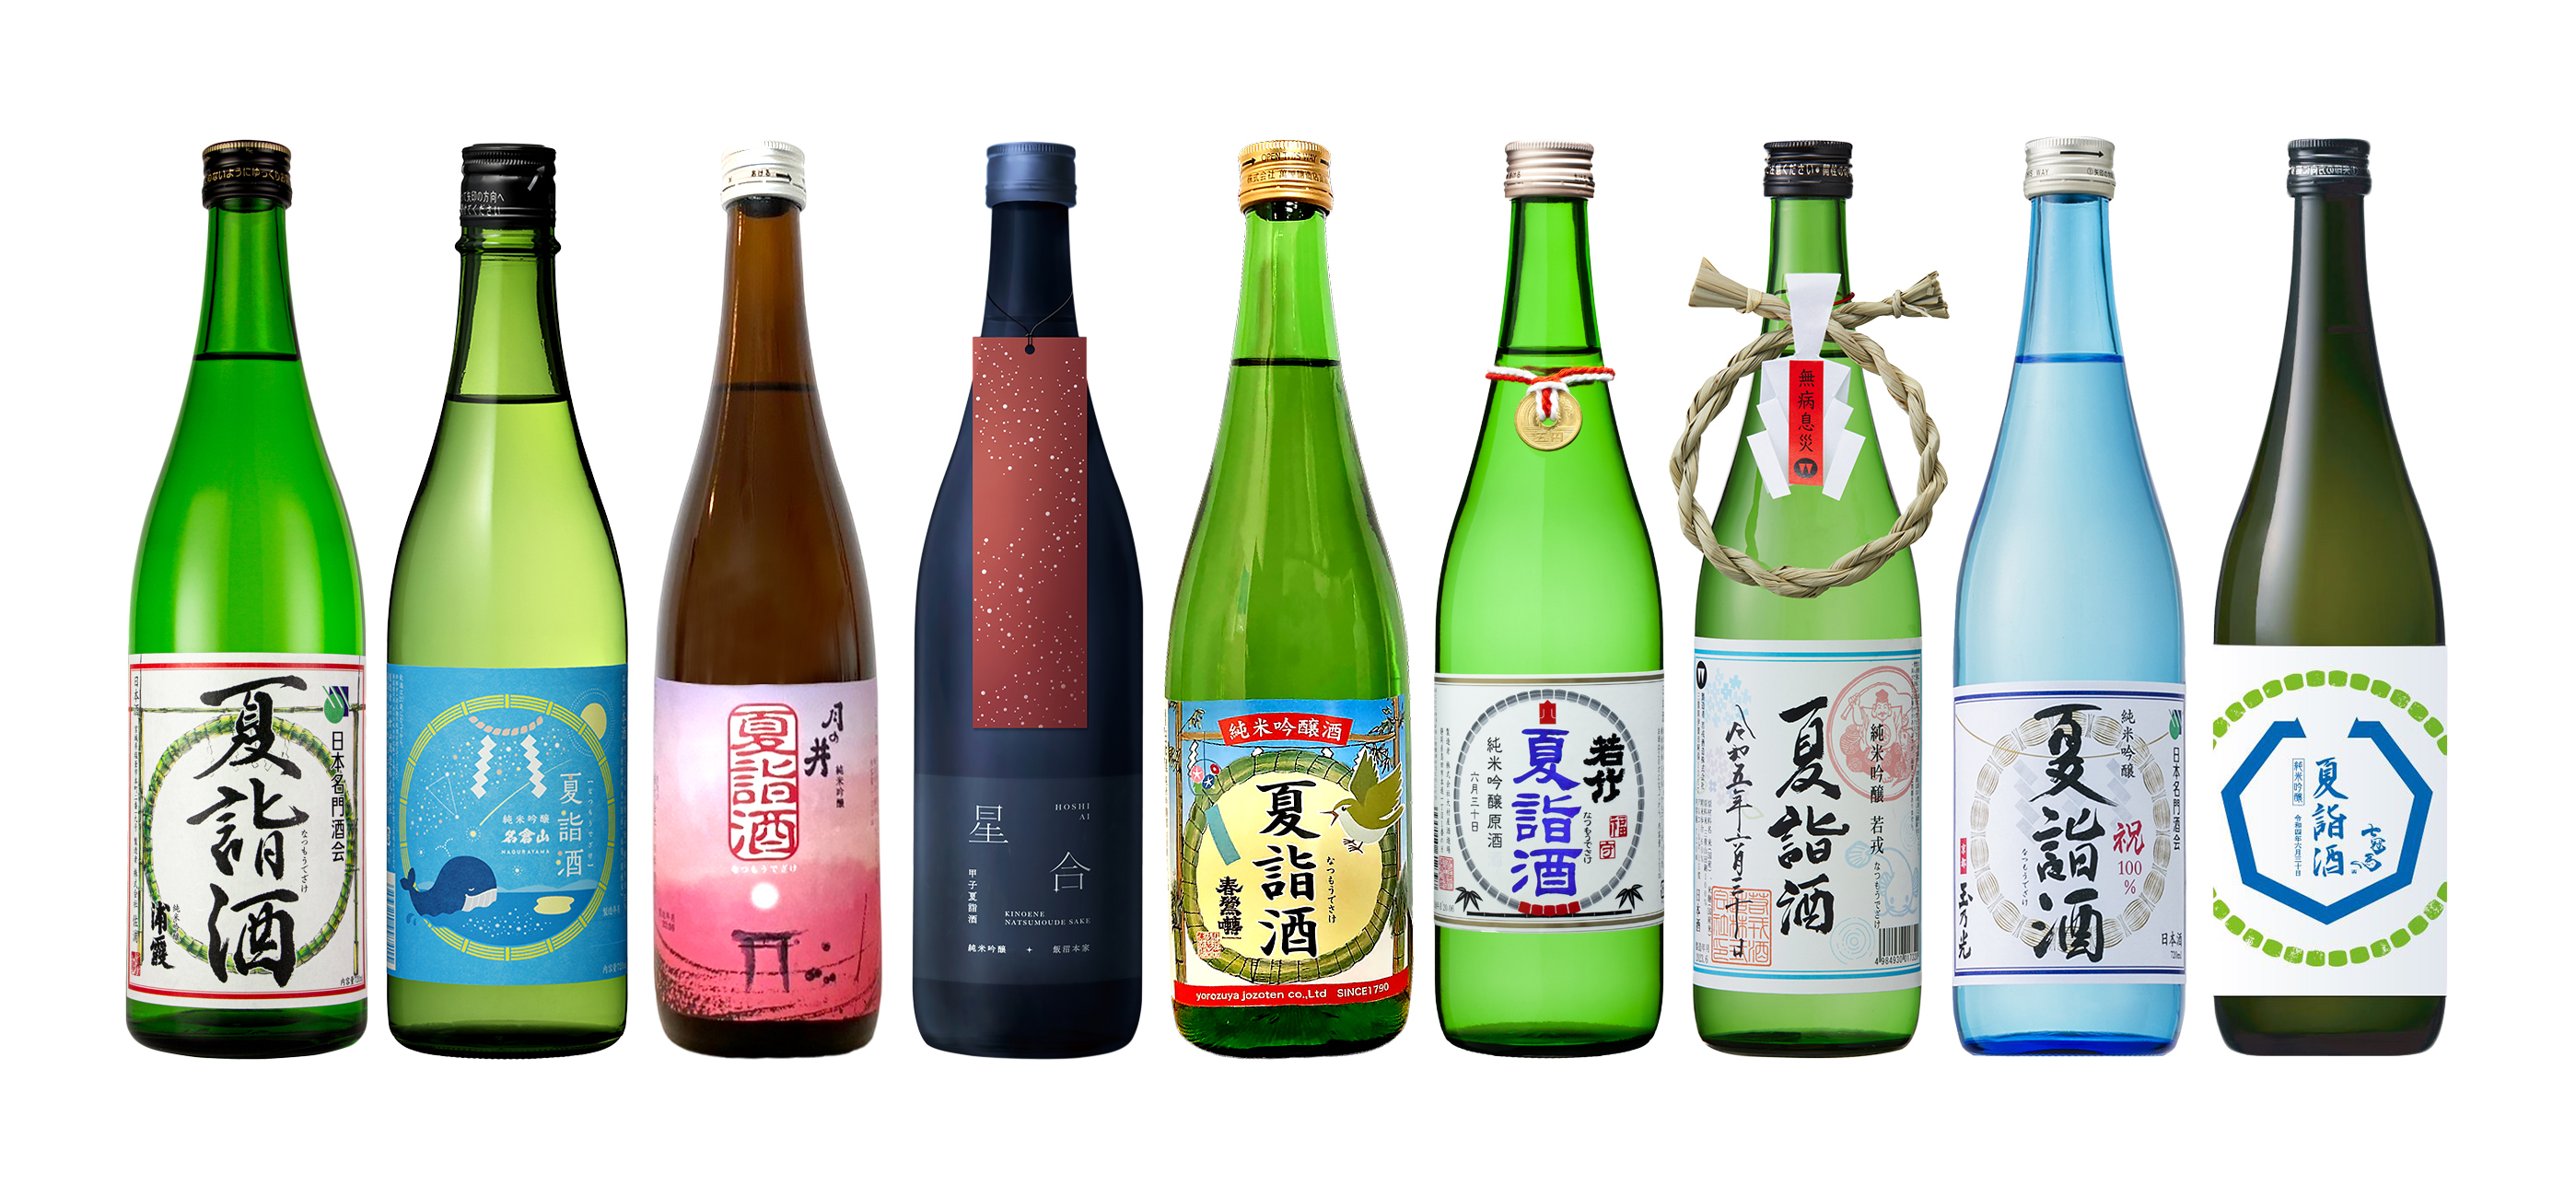 来たる半年の平穏を願う日本酒『夏詣酒』が
9県9蔵元より令和5年6月28日(水)～30日(金)発売　
～携わる皆様が平穏でありますように～